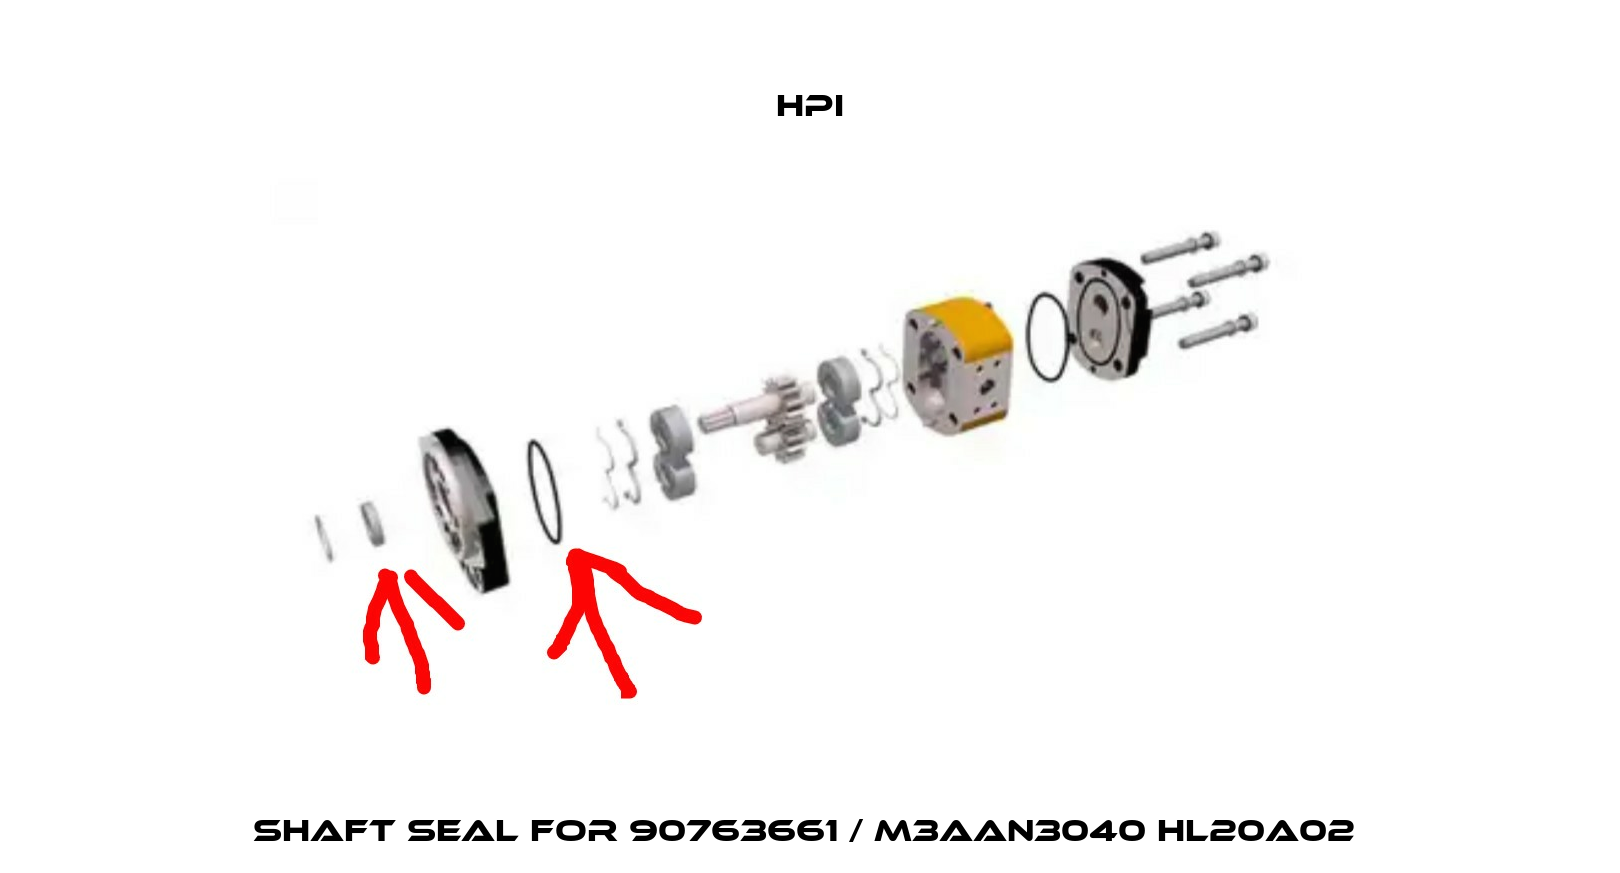 Shaft seal for 90763661 / M3AAN3040 HL20A02  HPI